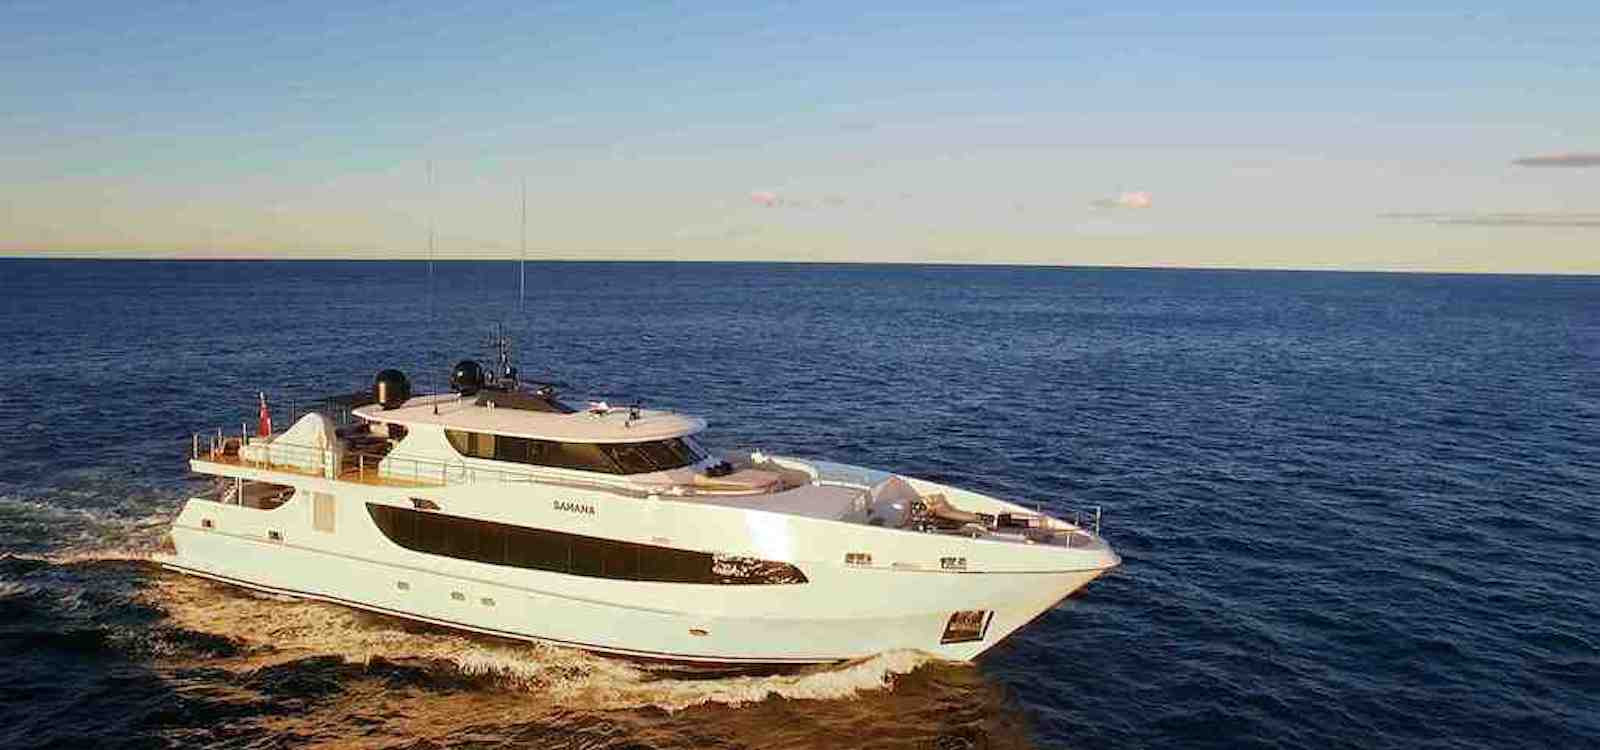 Sahana luxury boat hire